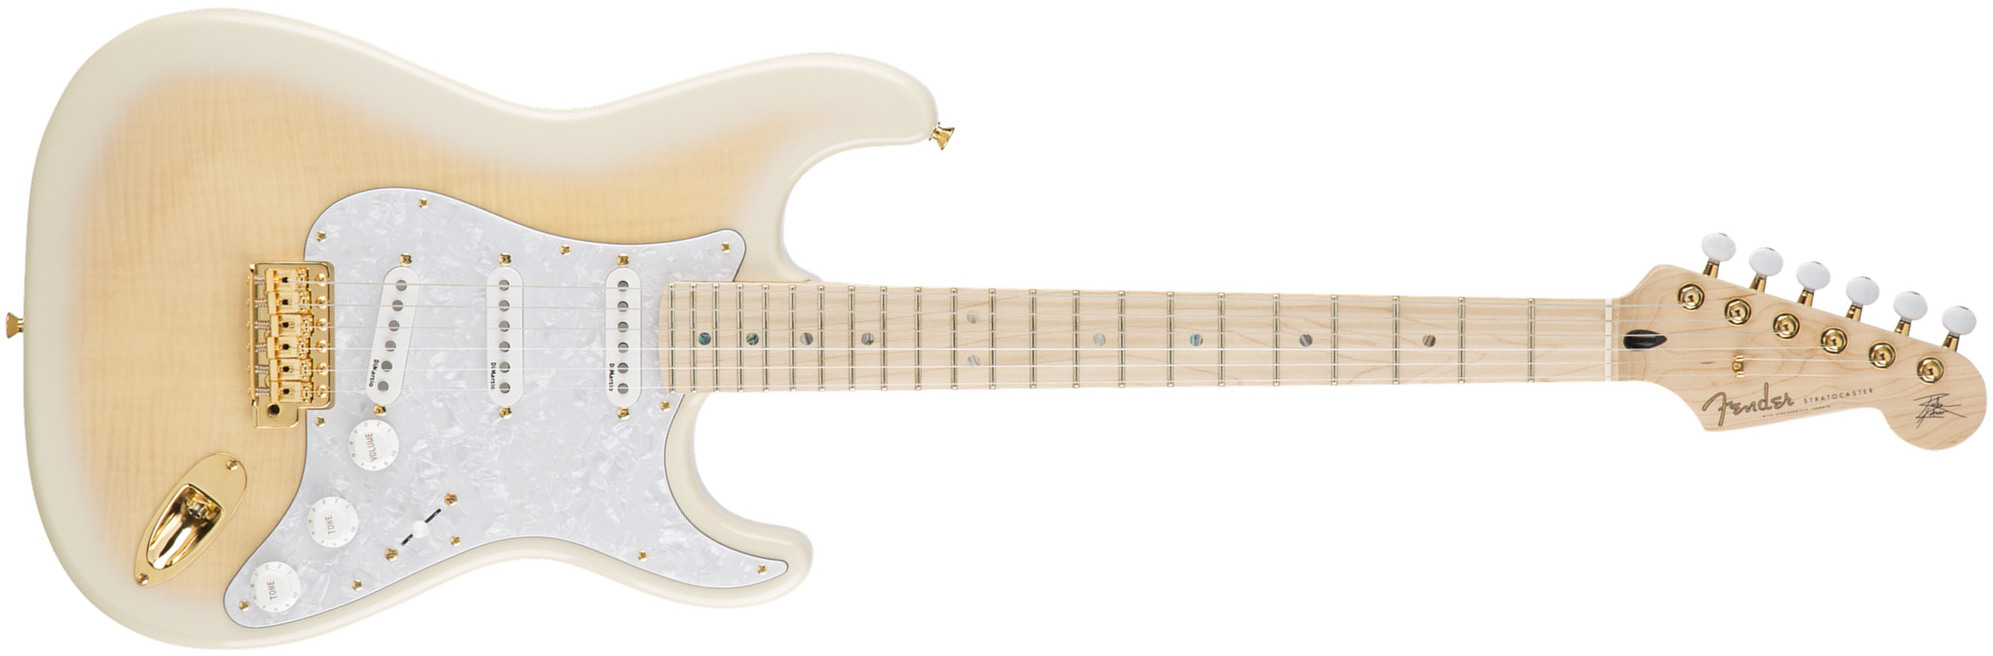 Fender Richie Kotzen Strat Jap Signature 3s Dimarzio Trem Mn - Transparent White Burst - Guitare Électrique Forme Str - Main picture